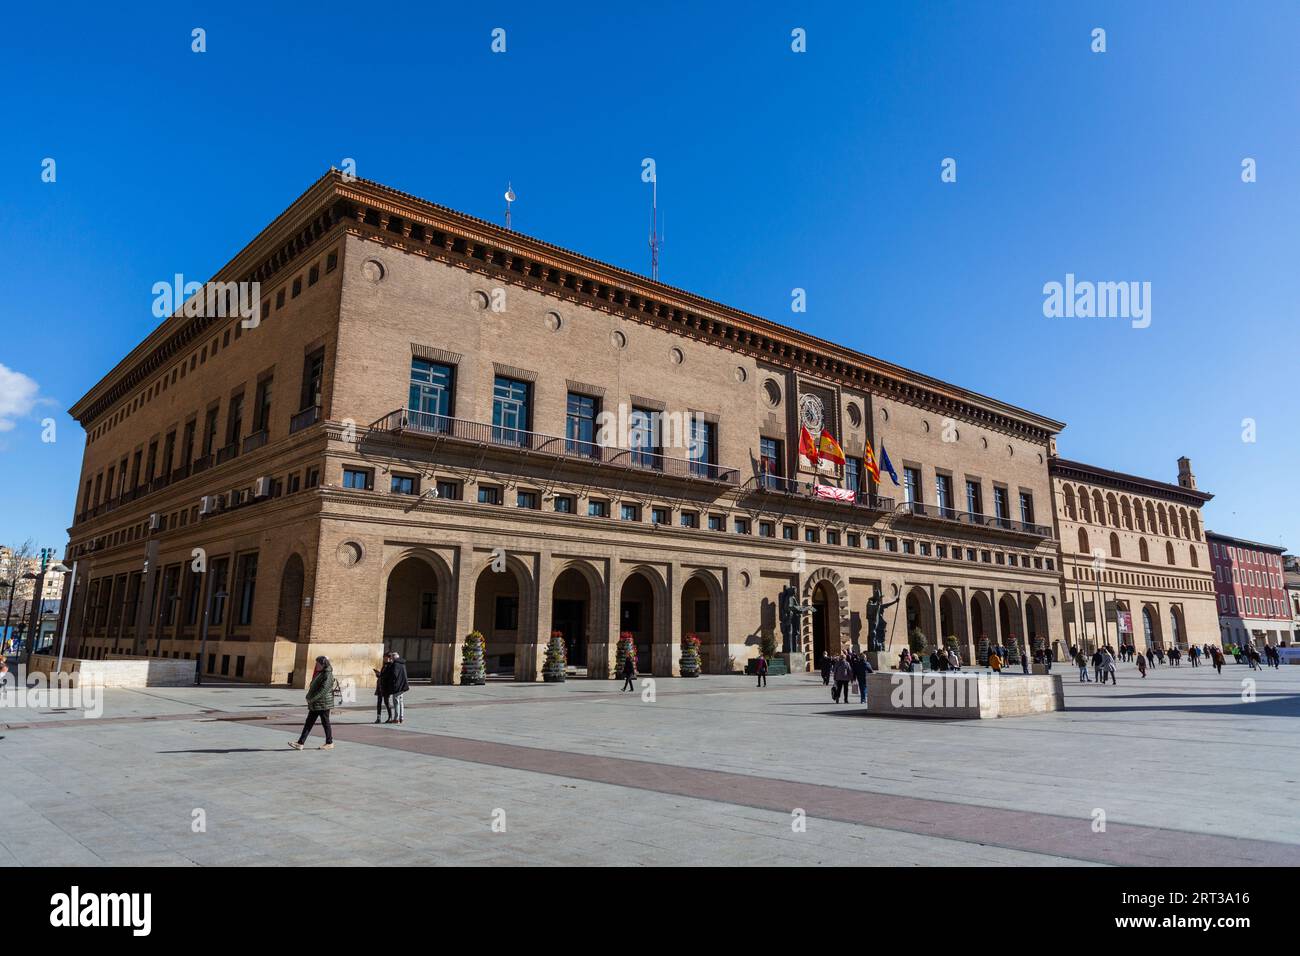 Zaragoza, Spanien - 14. FEBRUAR 2022: Das Rathaus von Zaragoza ist Sitz des stadtrats. Das Hotel befindet sich auf der Plaza of Our Lady of the Pillar und ist in der Mitte erbaut Stockfoto